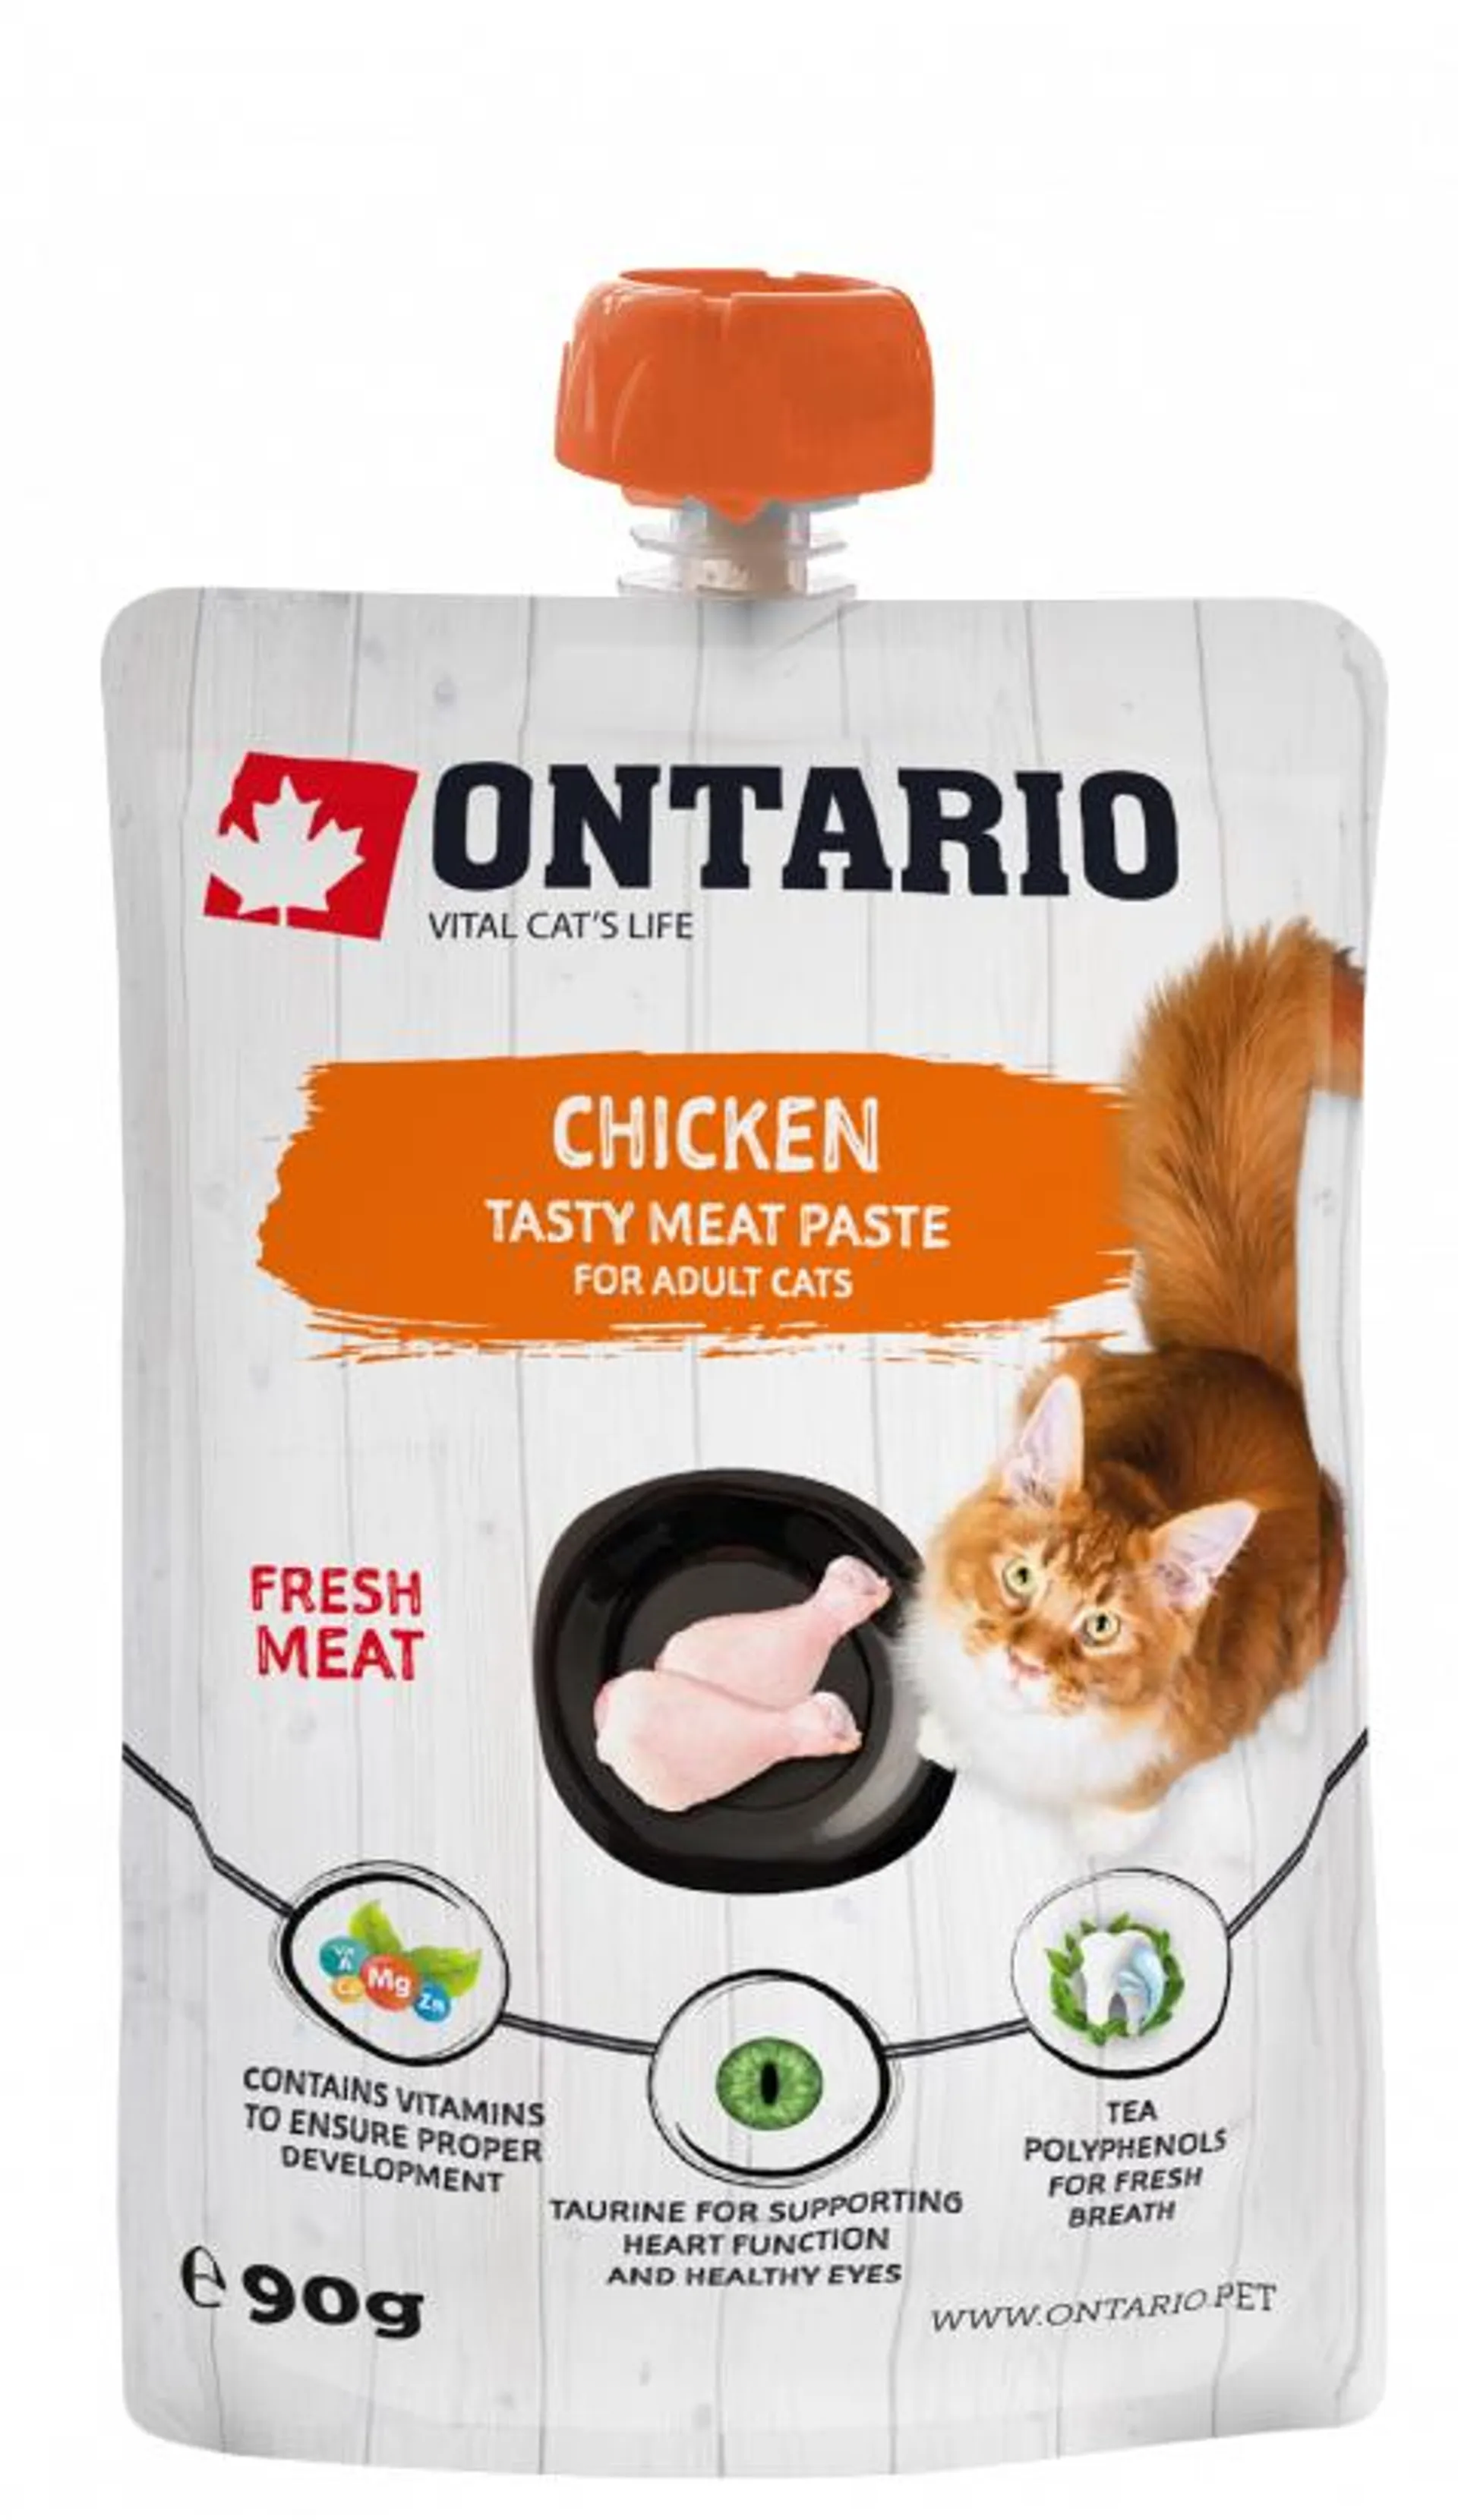 Ontario mäsová pasta pre mačky kura 90 g